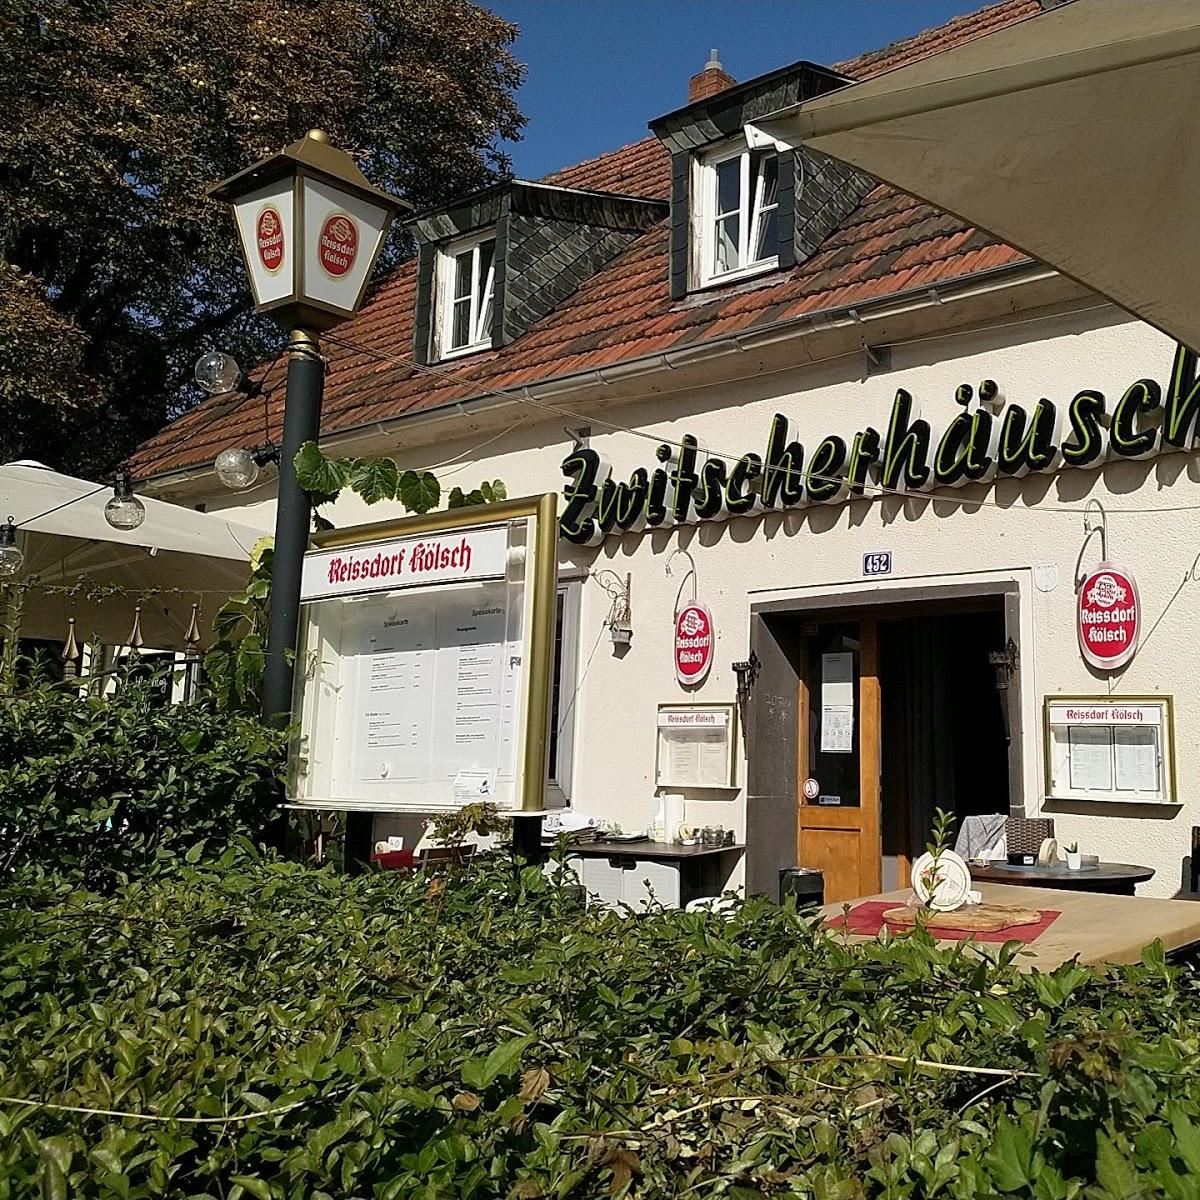 Restaurant "Zwitscherhäuschen" in Köln